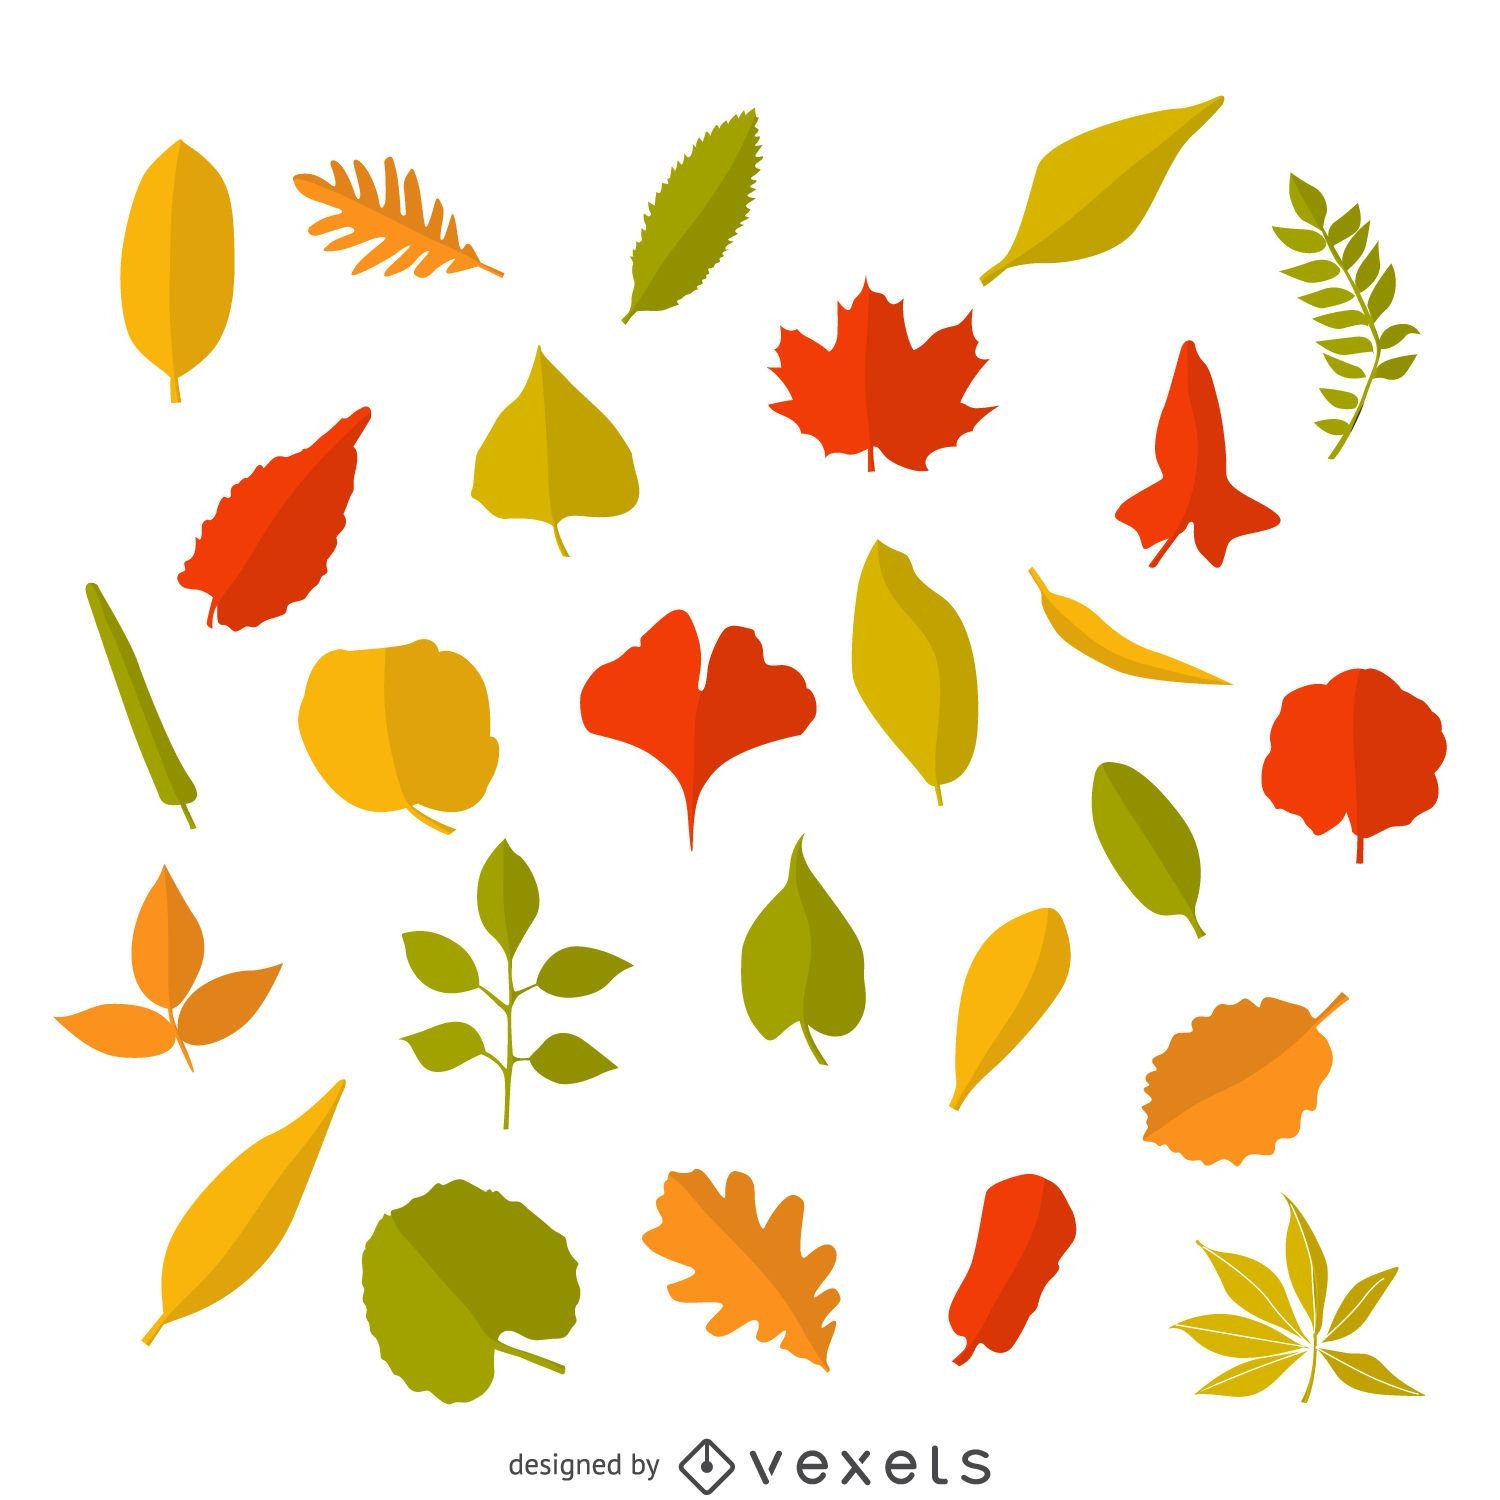 leaf illustrator download